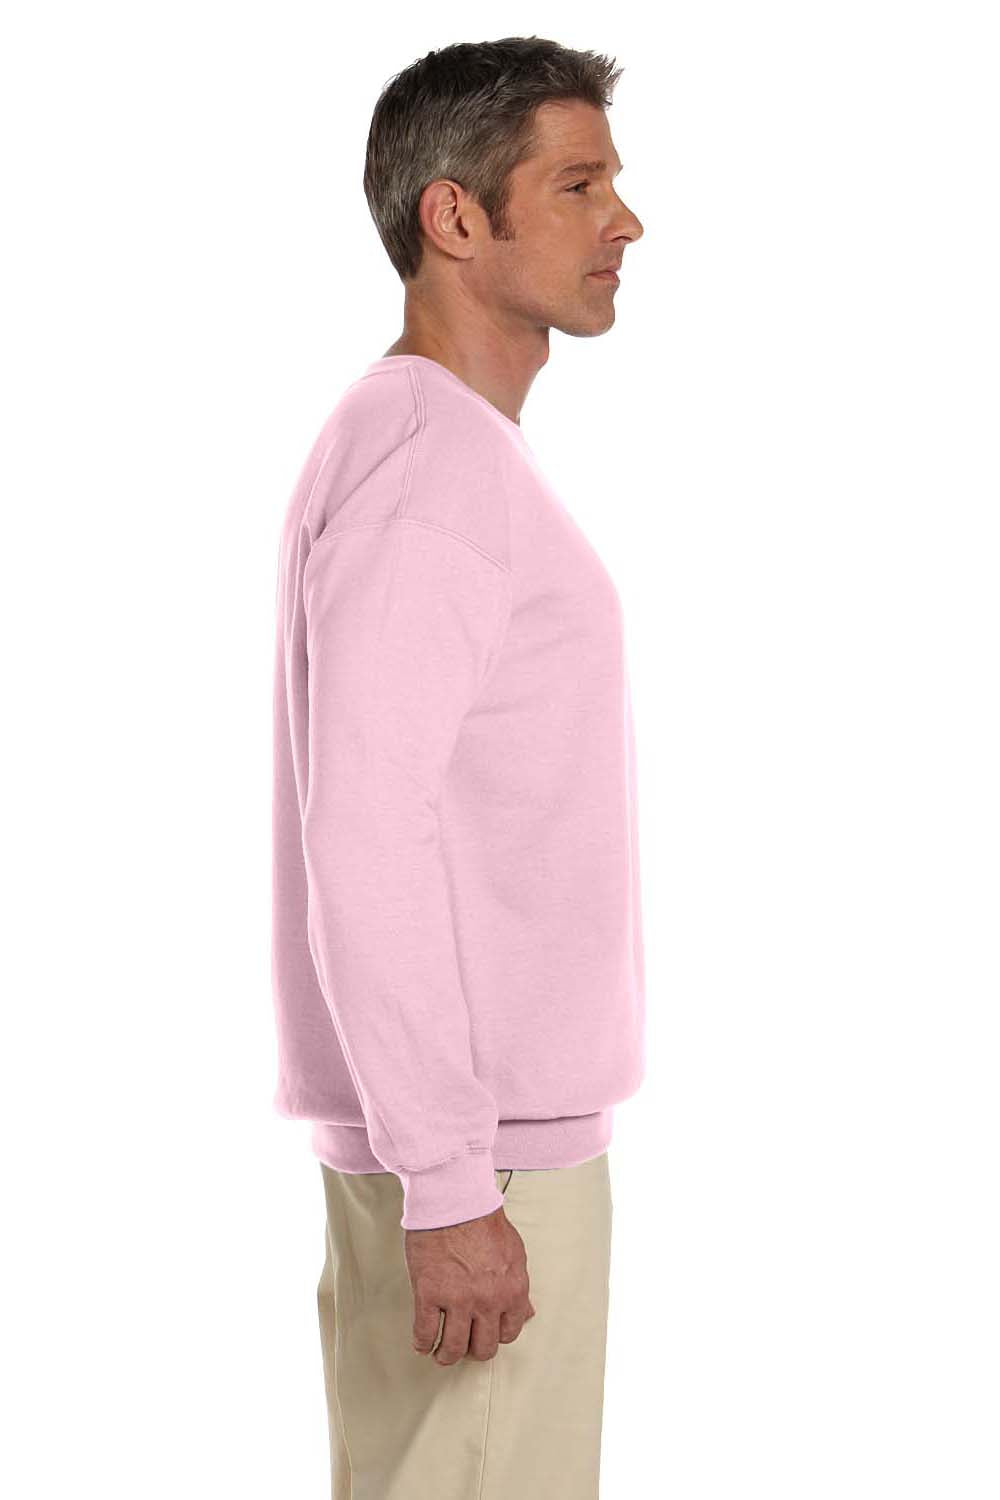 Gildan Men's Fleece Crewneck Sweatshirt, Style G18000 Light Pink, Pink